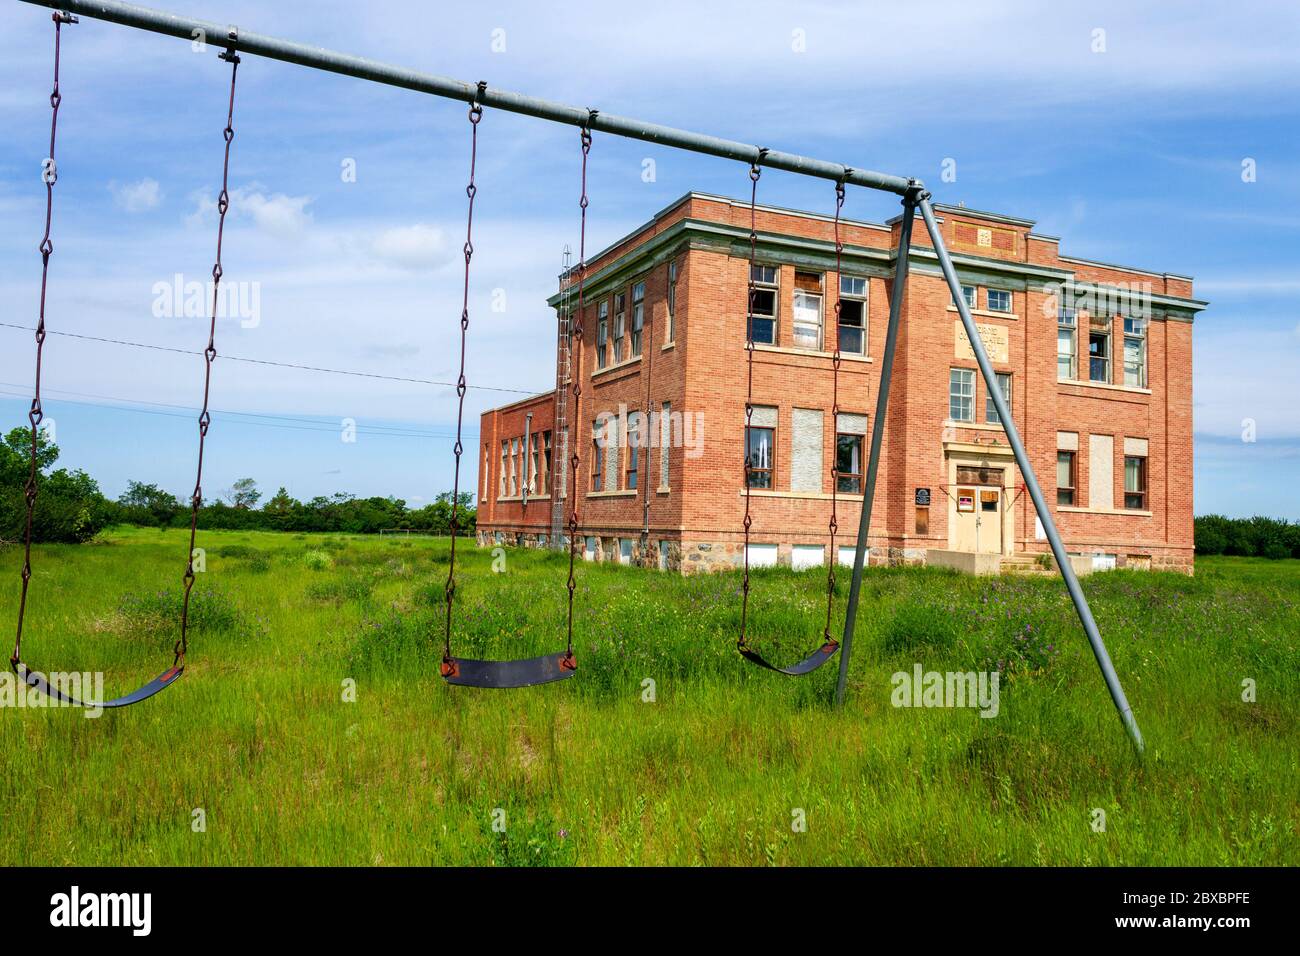 Aneroide, Saskatchewan, Canadá - 7 de agosto de 2019: Antigua escuela pública abandonada en la pequeña comunidad de Aneroid, Saskatchewan, Canadá. El de dos pisos, b Foto de stock